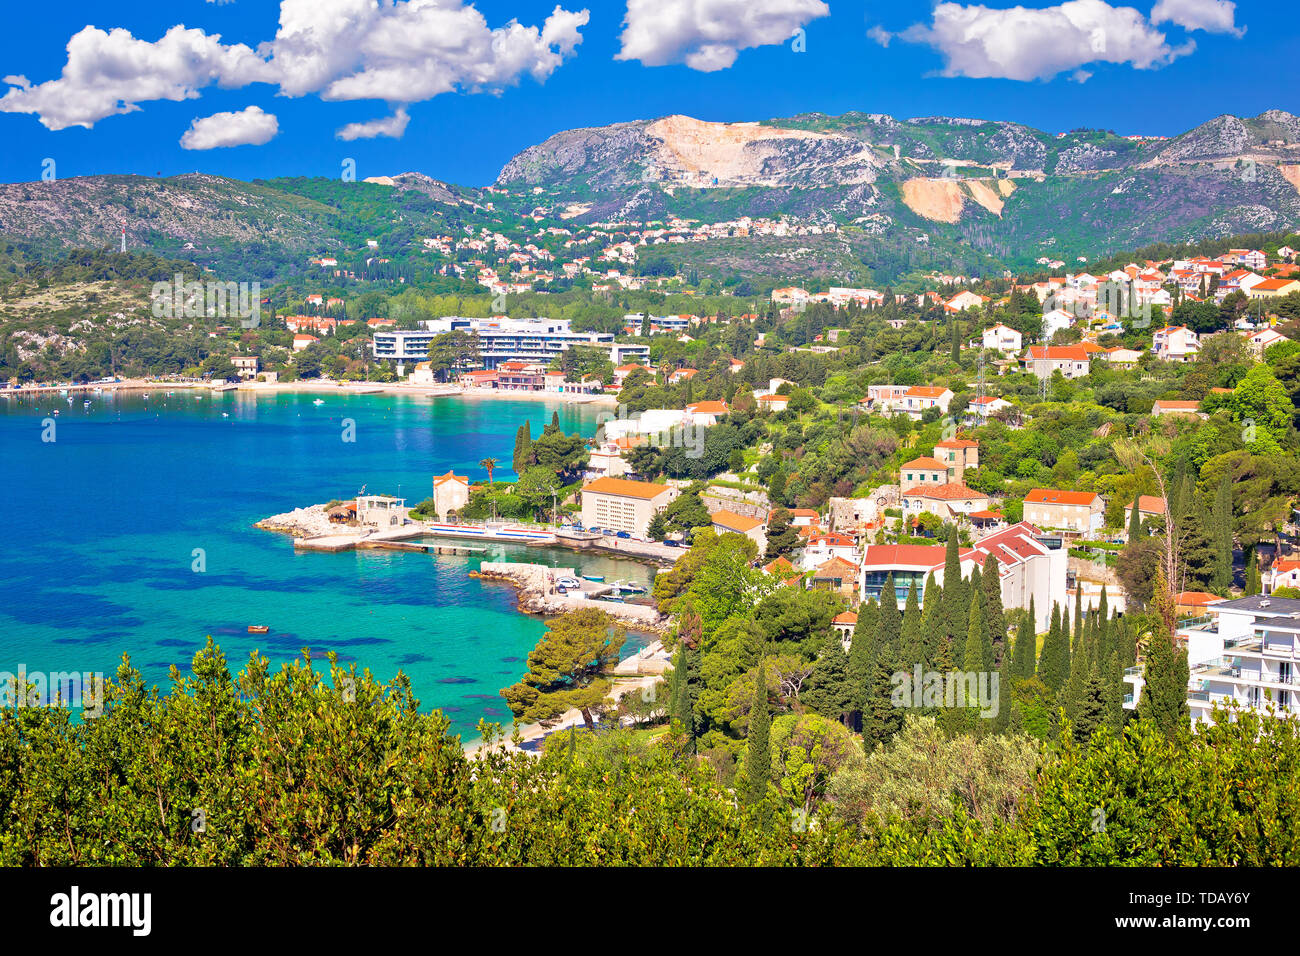 Sur la côte Adriatique et à Srebreno Mlini Dubrovnik bay, dans l'archipel de Dalmatie, en Croatie Banque D'Images